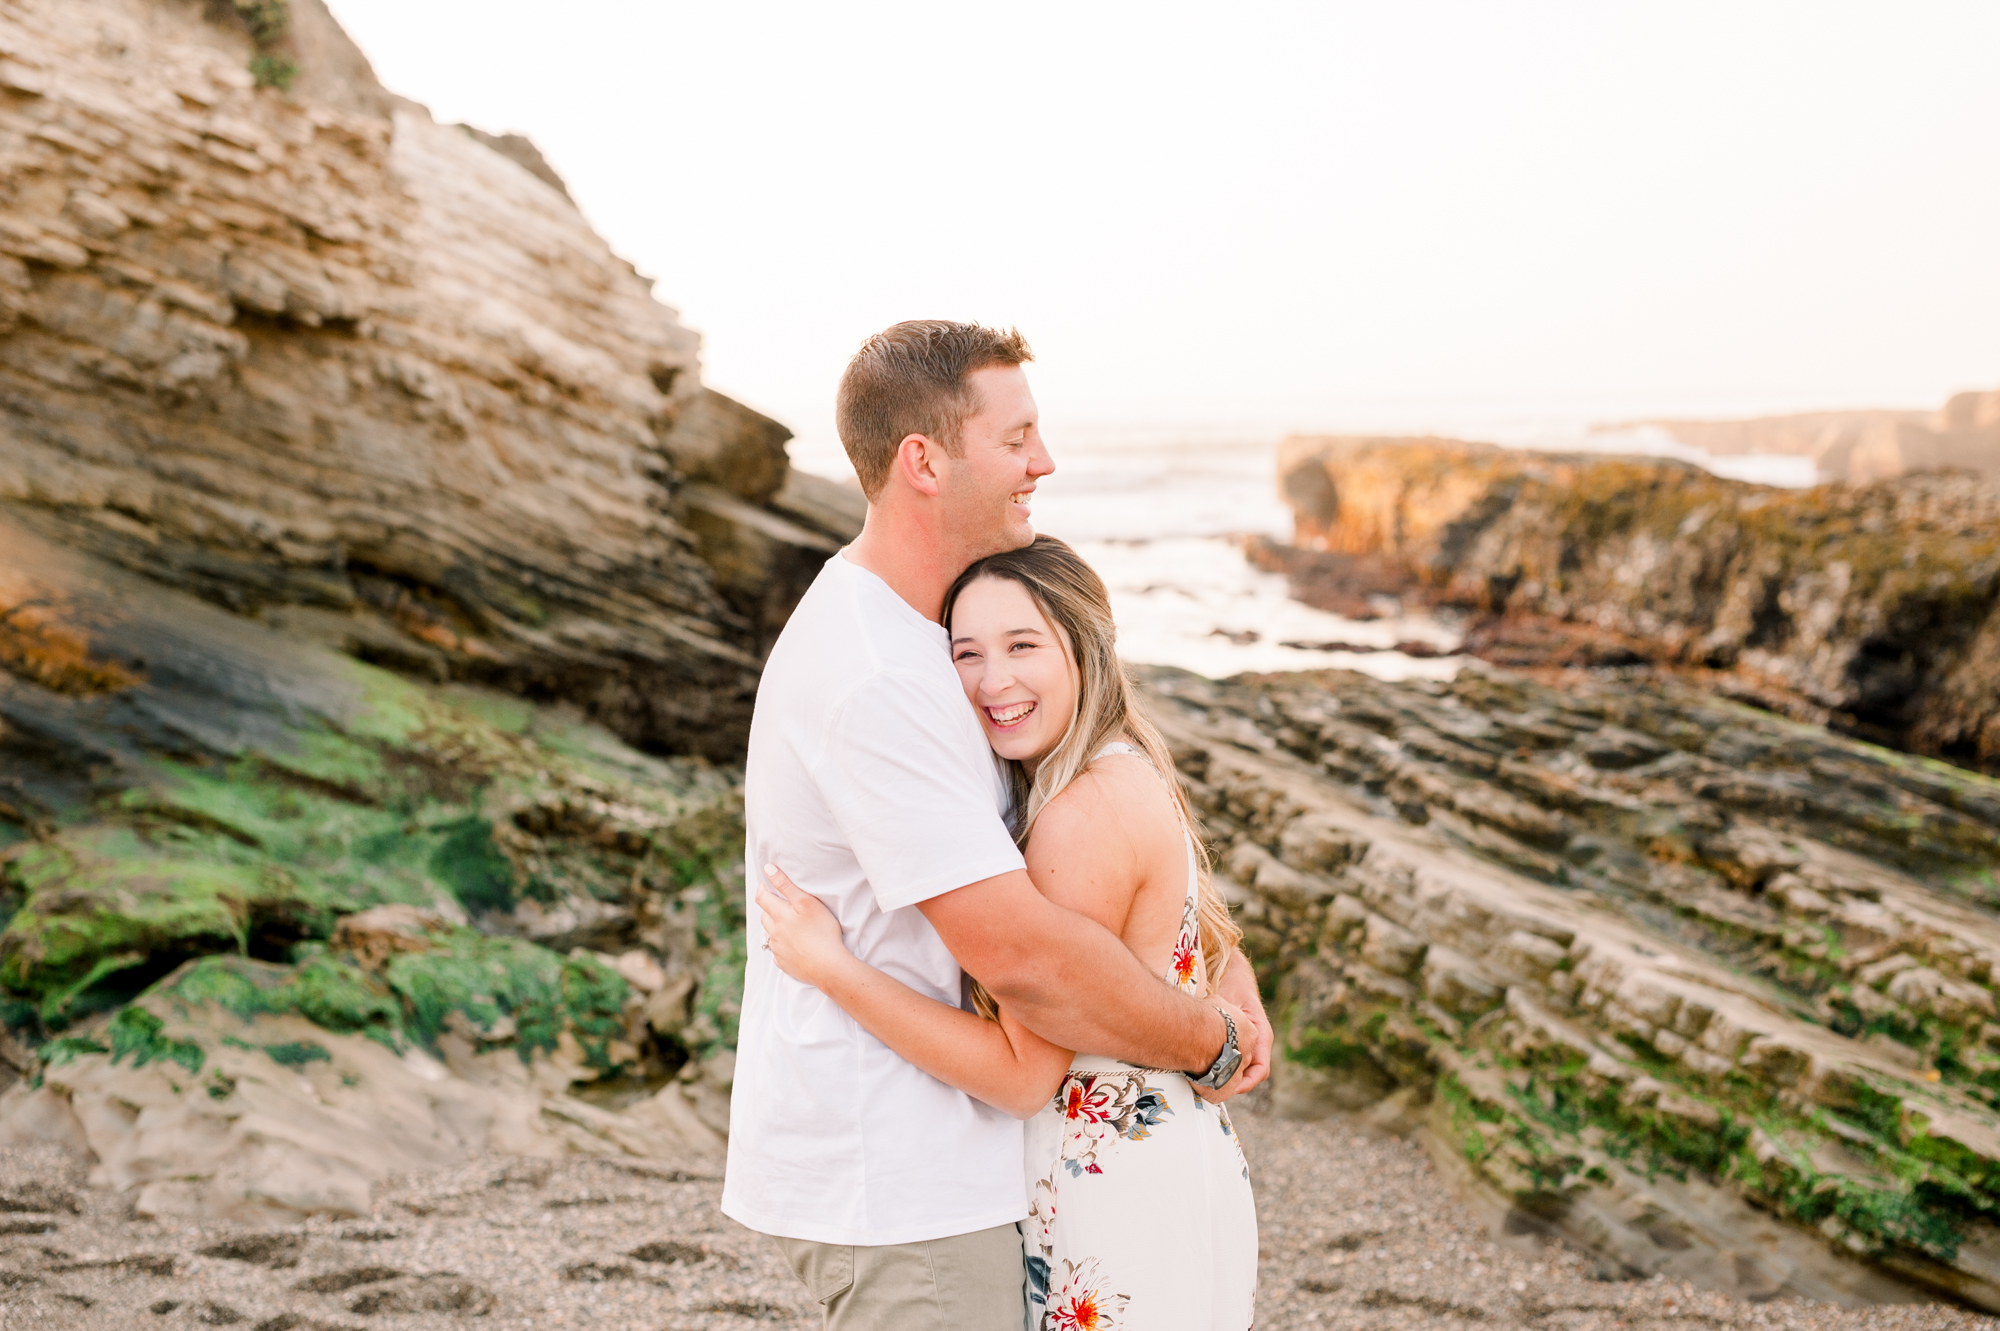 Allie + Spenser | Santa Barbara Engagement